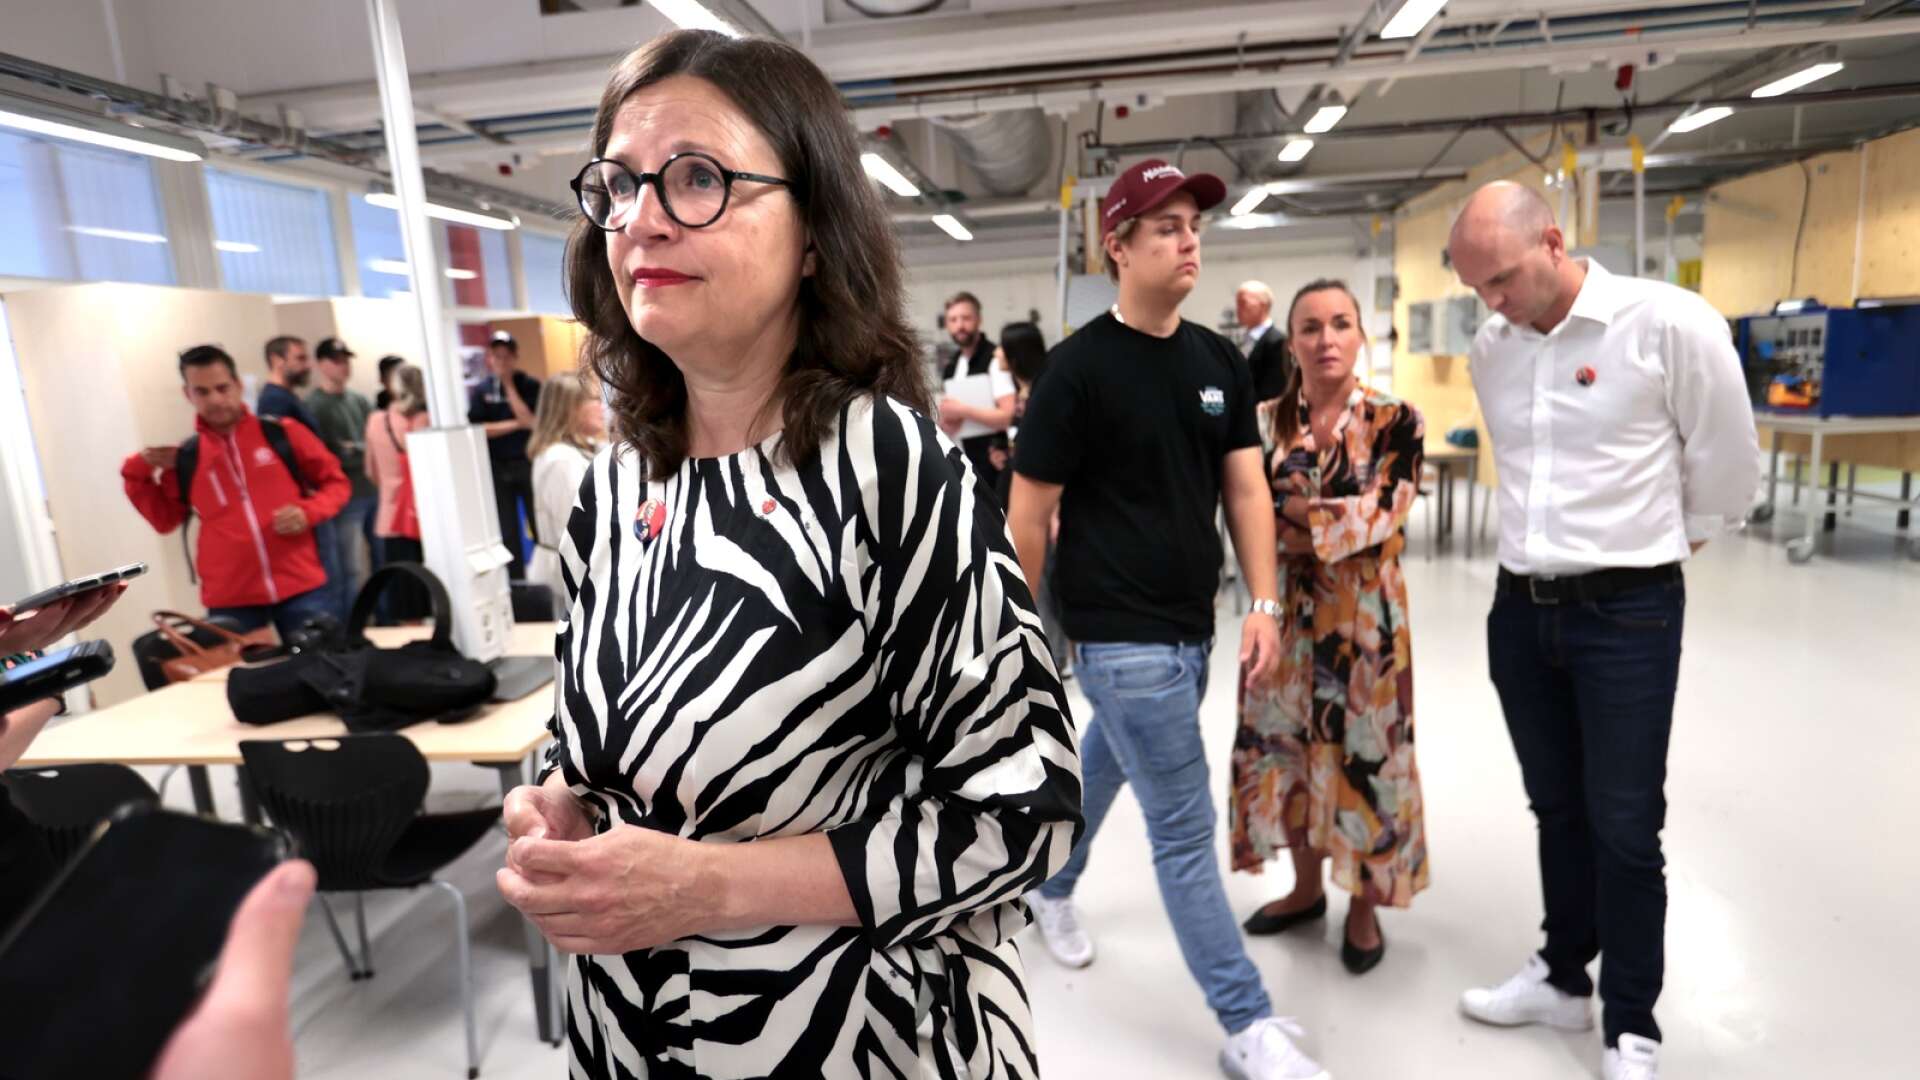 Utbildningsminister Anna Ekström besökte Nobelgymnasiet i Karlstad på onsdagen. Socialdemokraterna går till val på att stoppa vinstjakten i skolan.